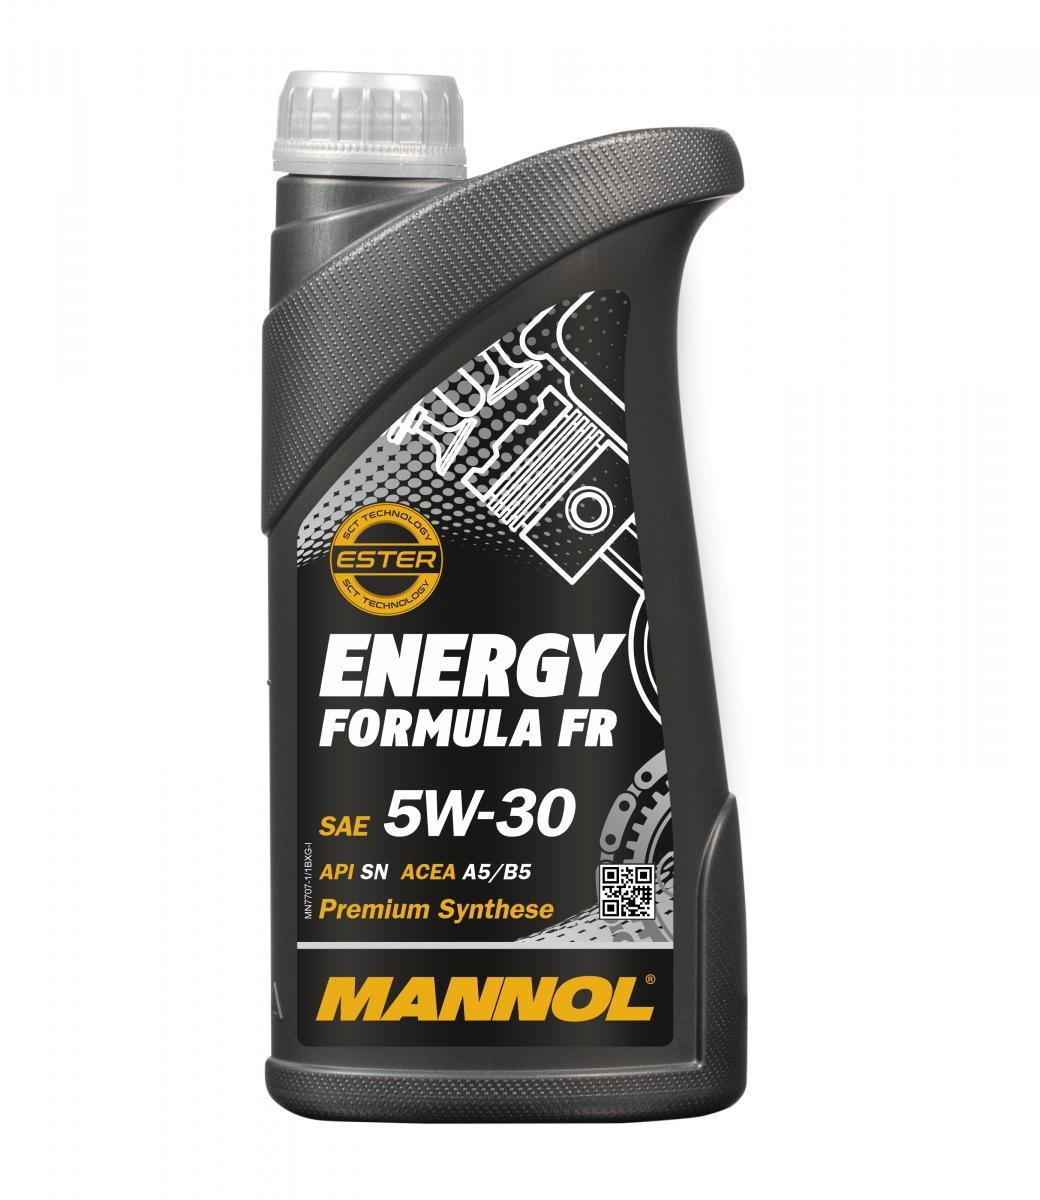 Skoda Motoröl MANNOL MN7707-1 zum günstigen Preis